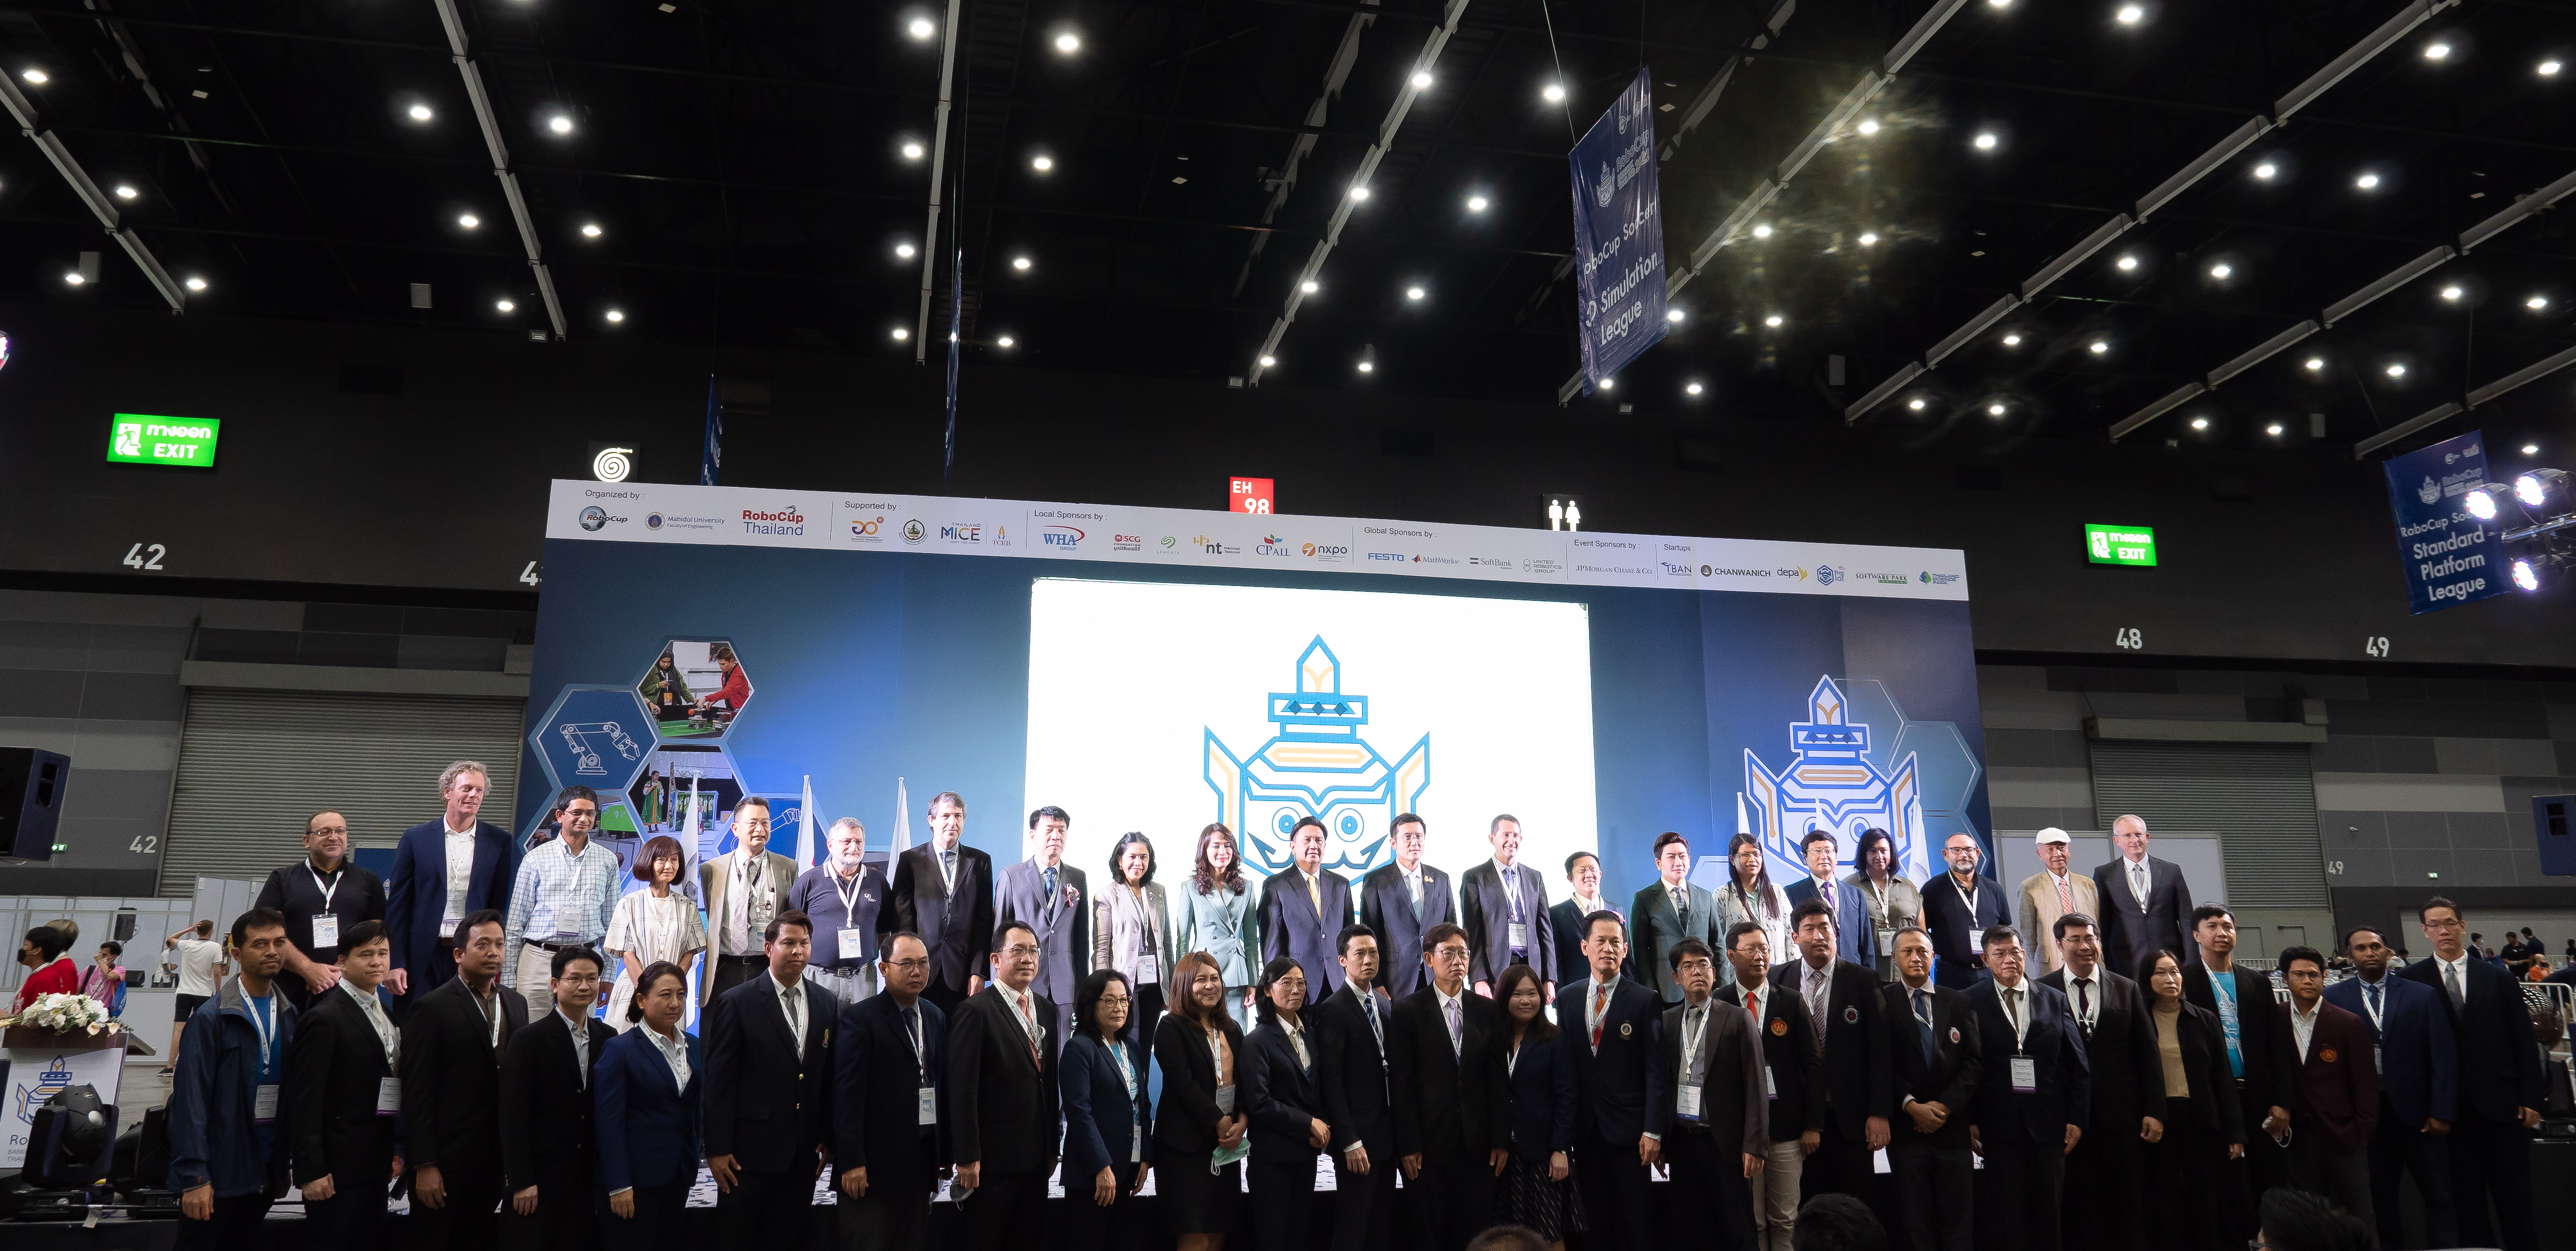 AppliCAD ร่วมเป็นหนึ่งในผู้สนับสนุน RoboCup 2022 การแข่งขันหุ่นยนต์ระดับโลก